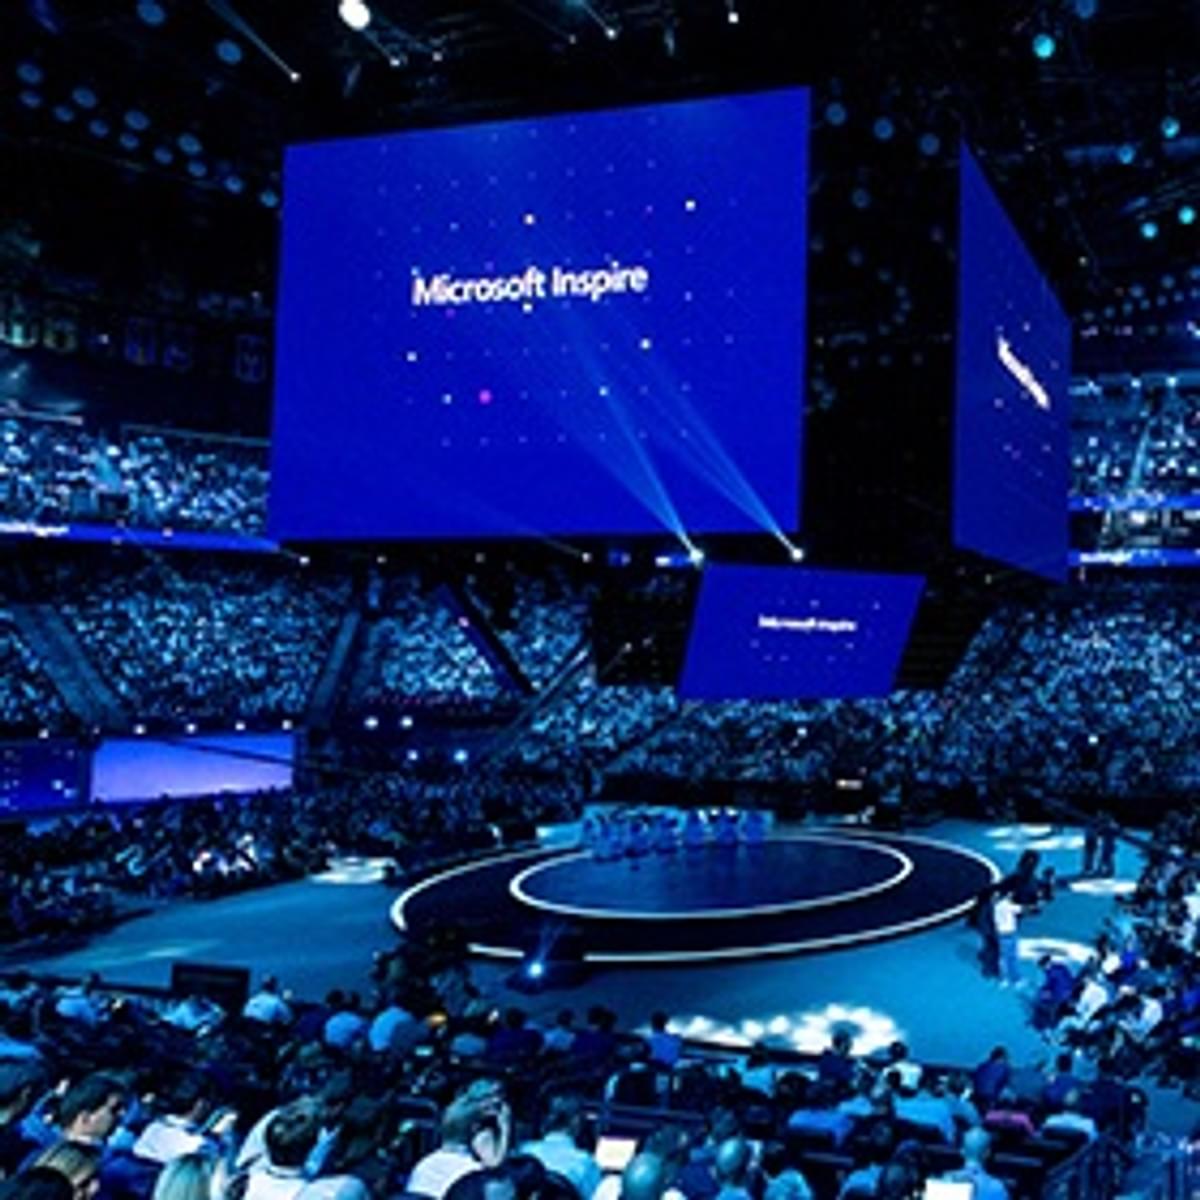 Microsoft toont tijdens Inspire in Las Vegas nieuwe product innovaties image